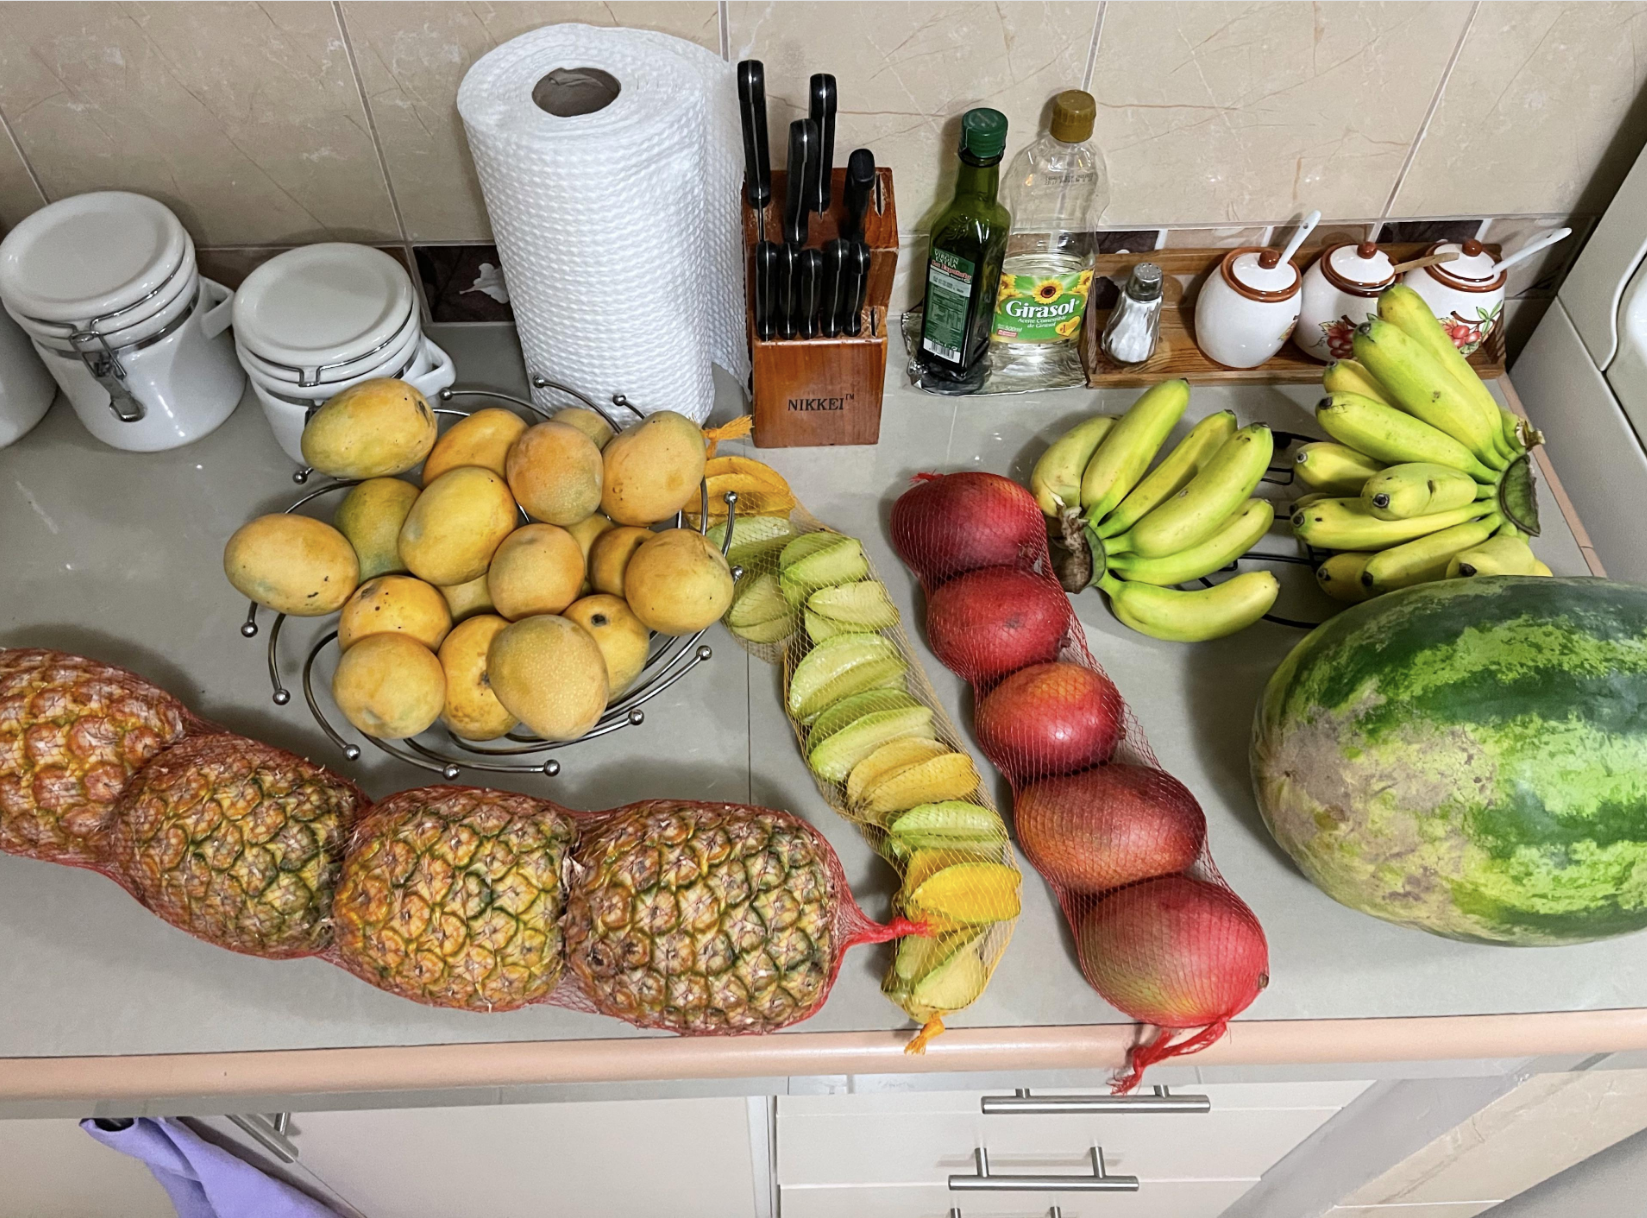 An assortment of fruit